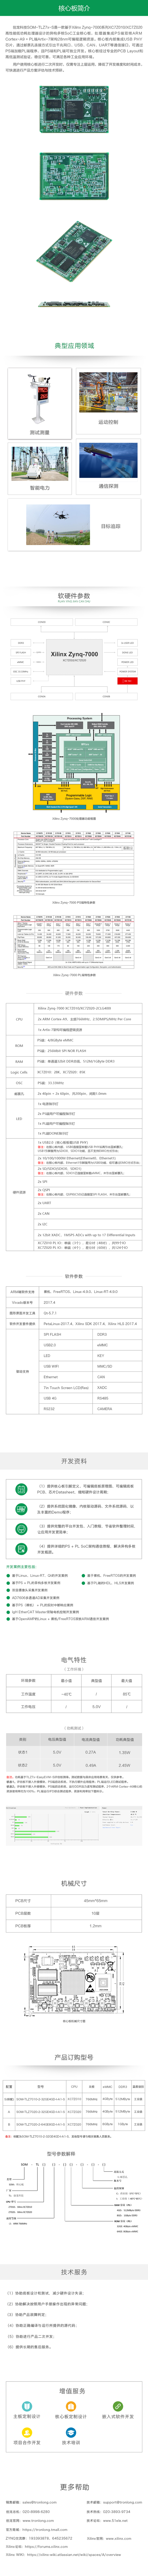 XC7Z020|FPGA|Zynq7020|Zynq7010|Zynq7000核心板|开发板|Cortex-A9|Artix-7|ARM|Linux